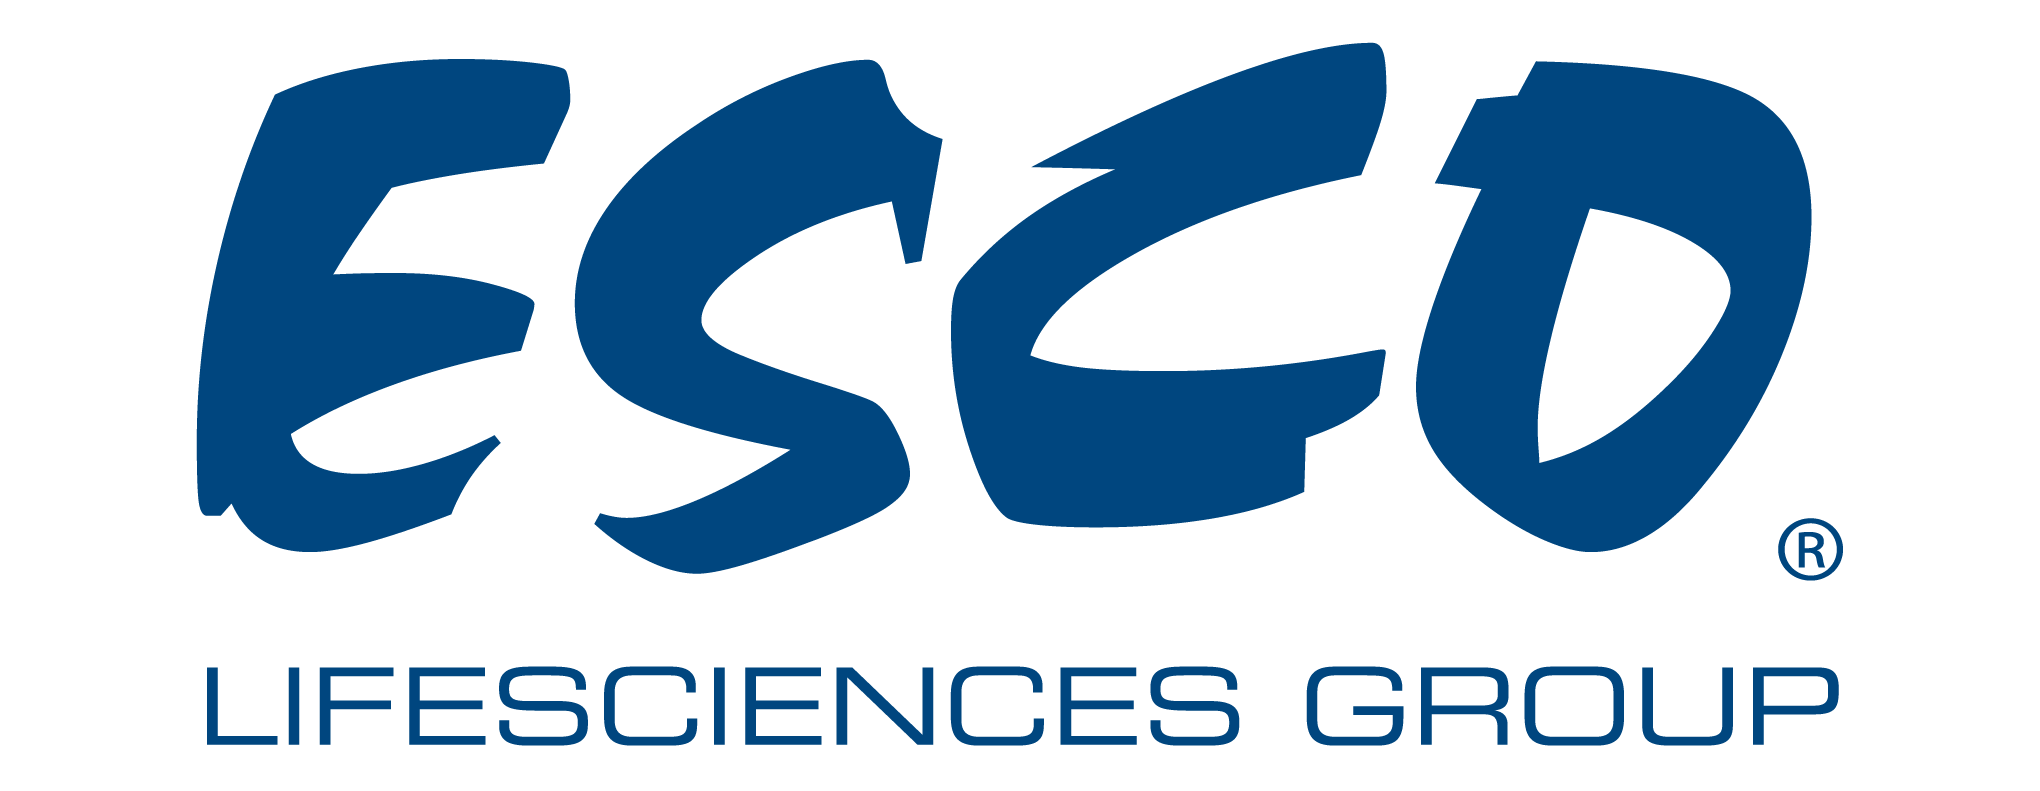 Esco Life Sciences Group Logo